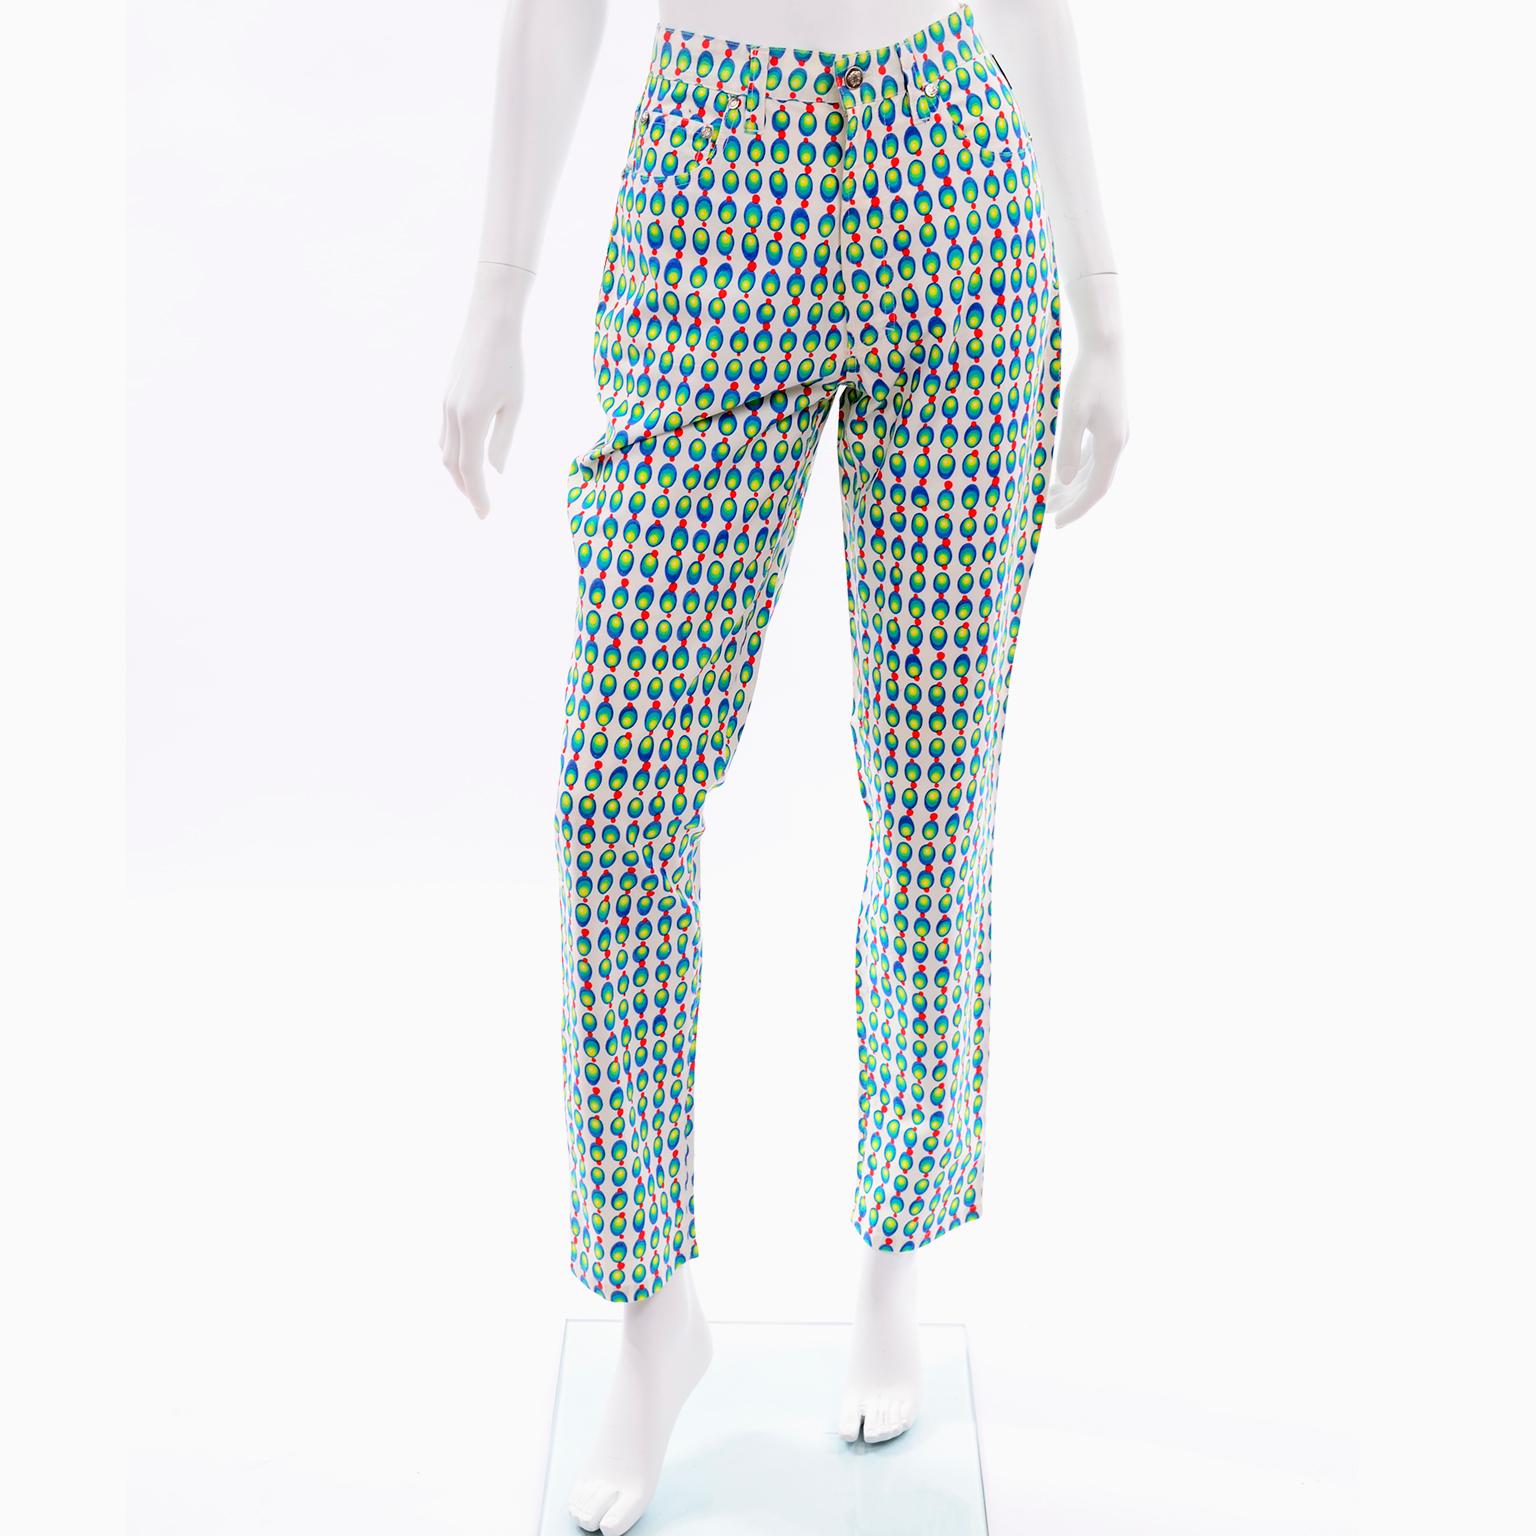 Il s'agit d'un fabuleux jean vintage des années 1990 de Gianni Versace Jeans Couture. Ces pattes de bois  les jeans sont blancs avec des cercles stylisés bleus, verts, rouges et jaunes qui ressemblent à des olives abstraites ! Pantalon taille haute